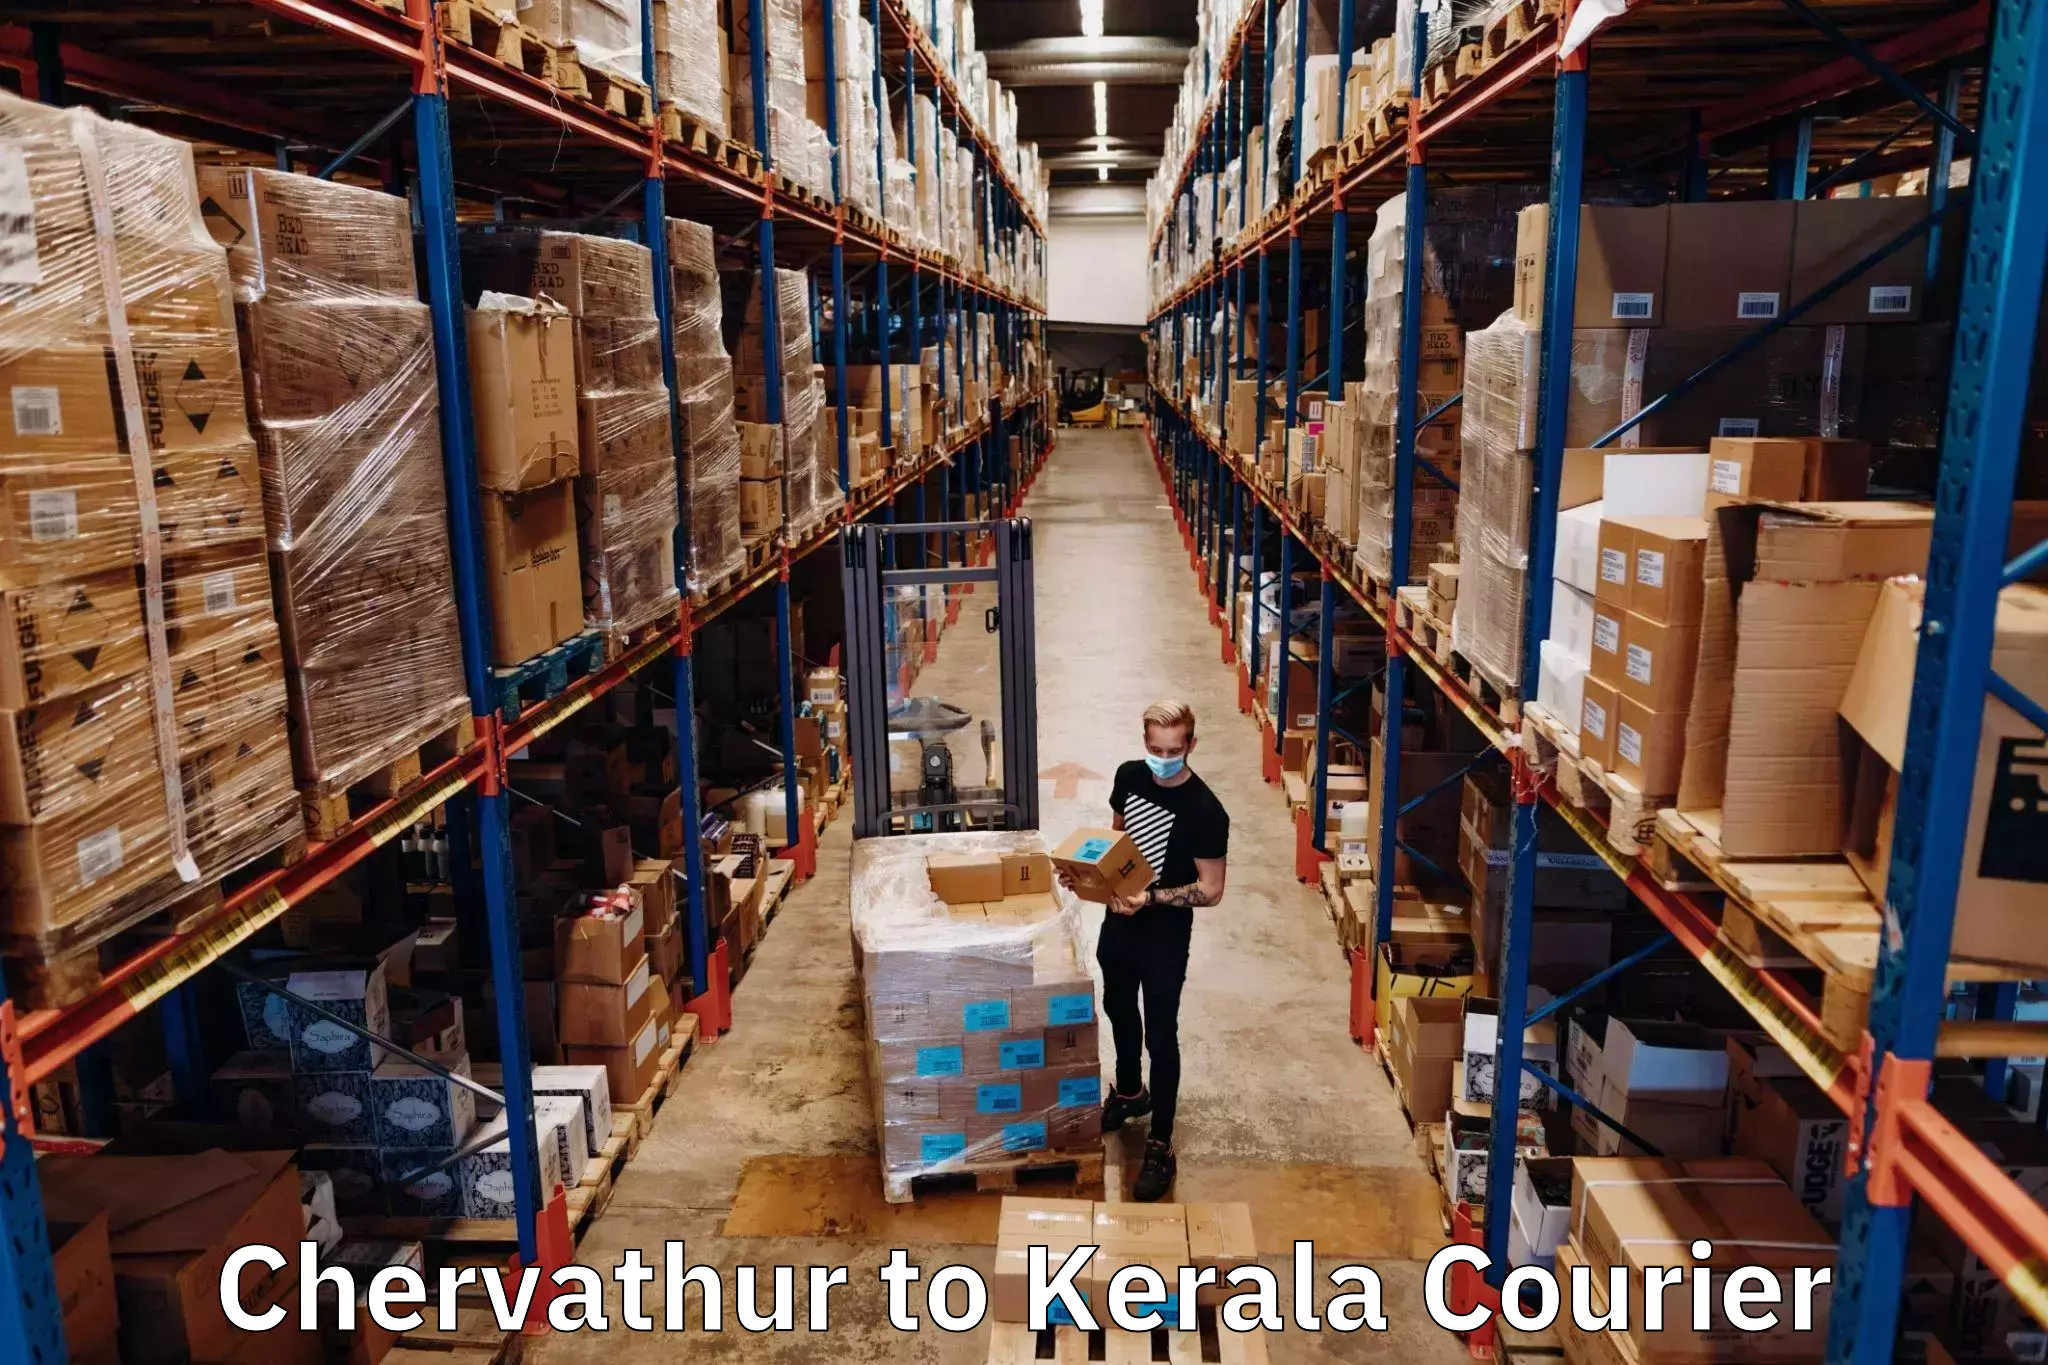 Speedy delivery service Chervathur to Kakkayam